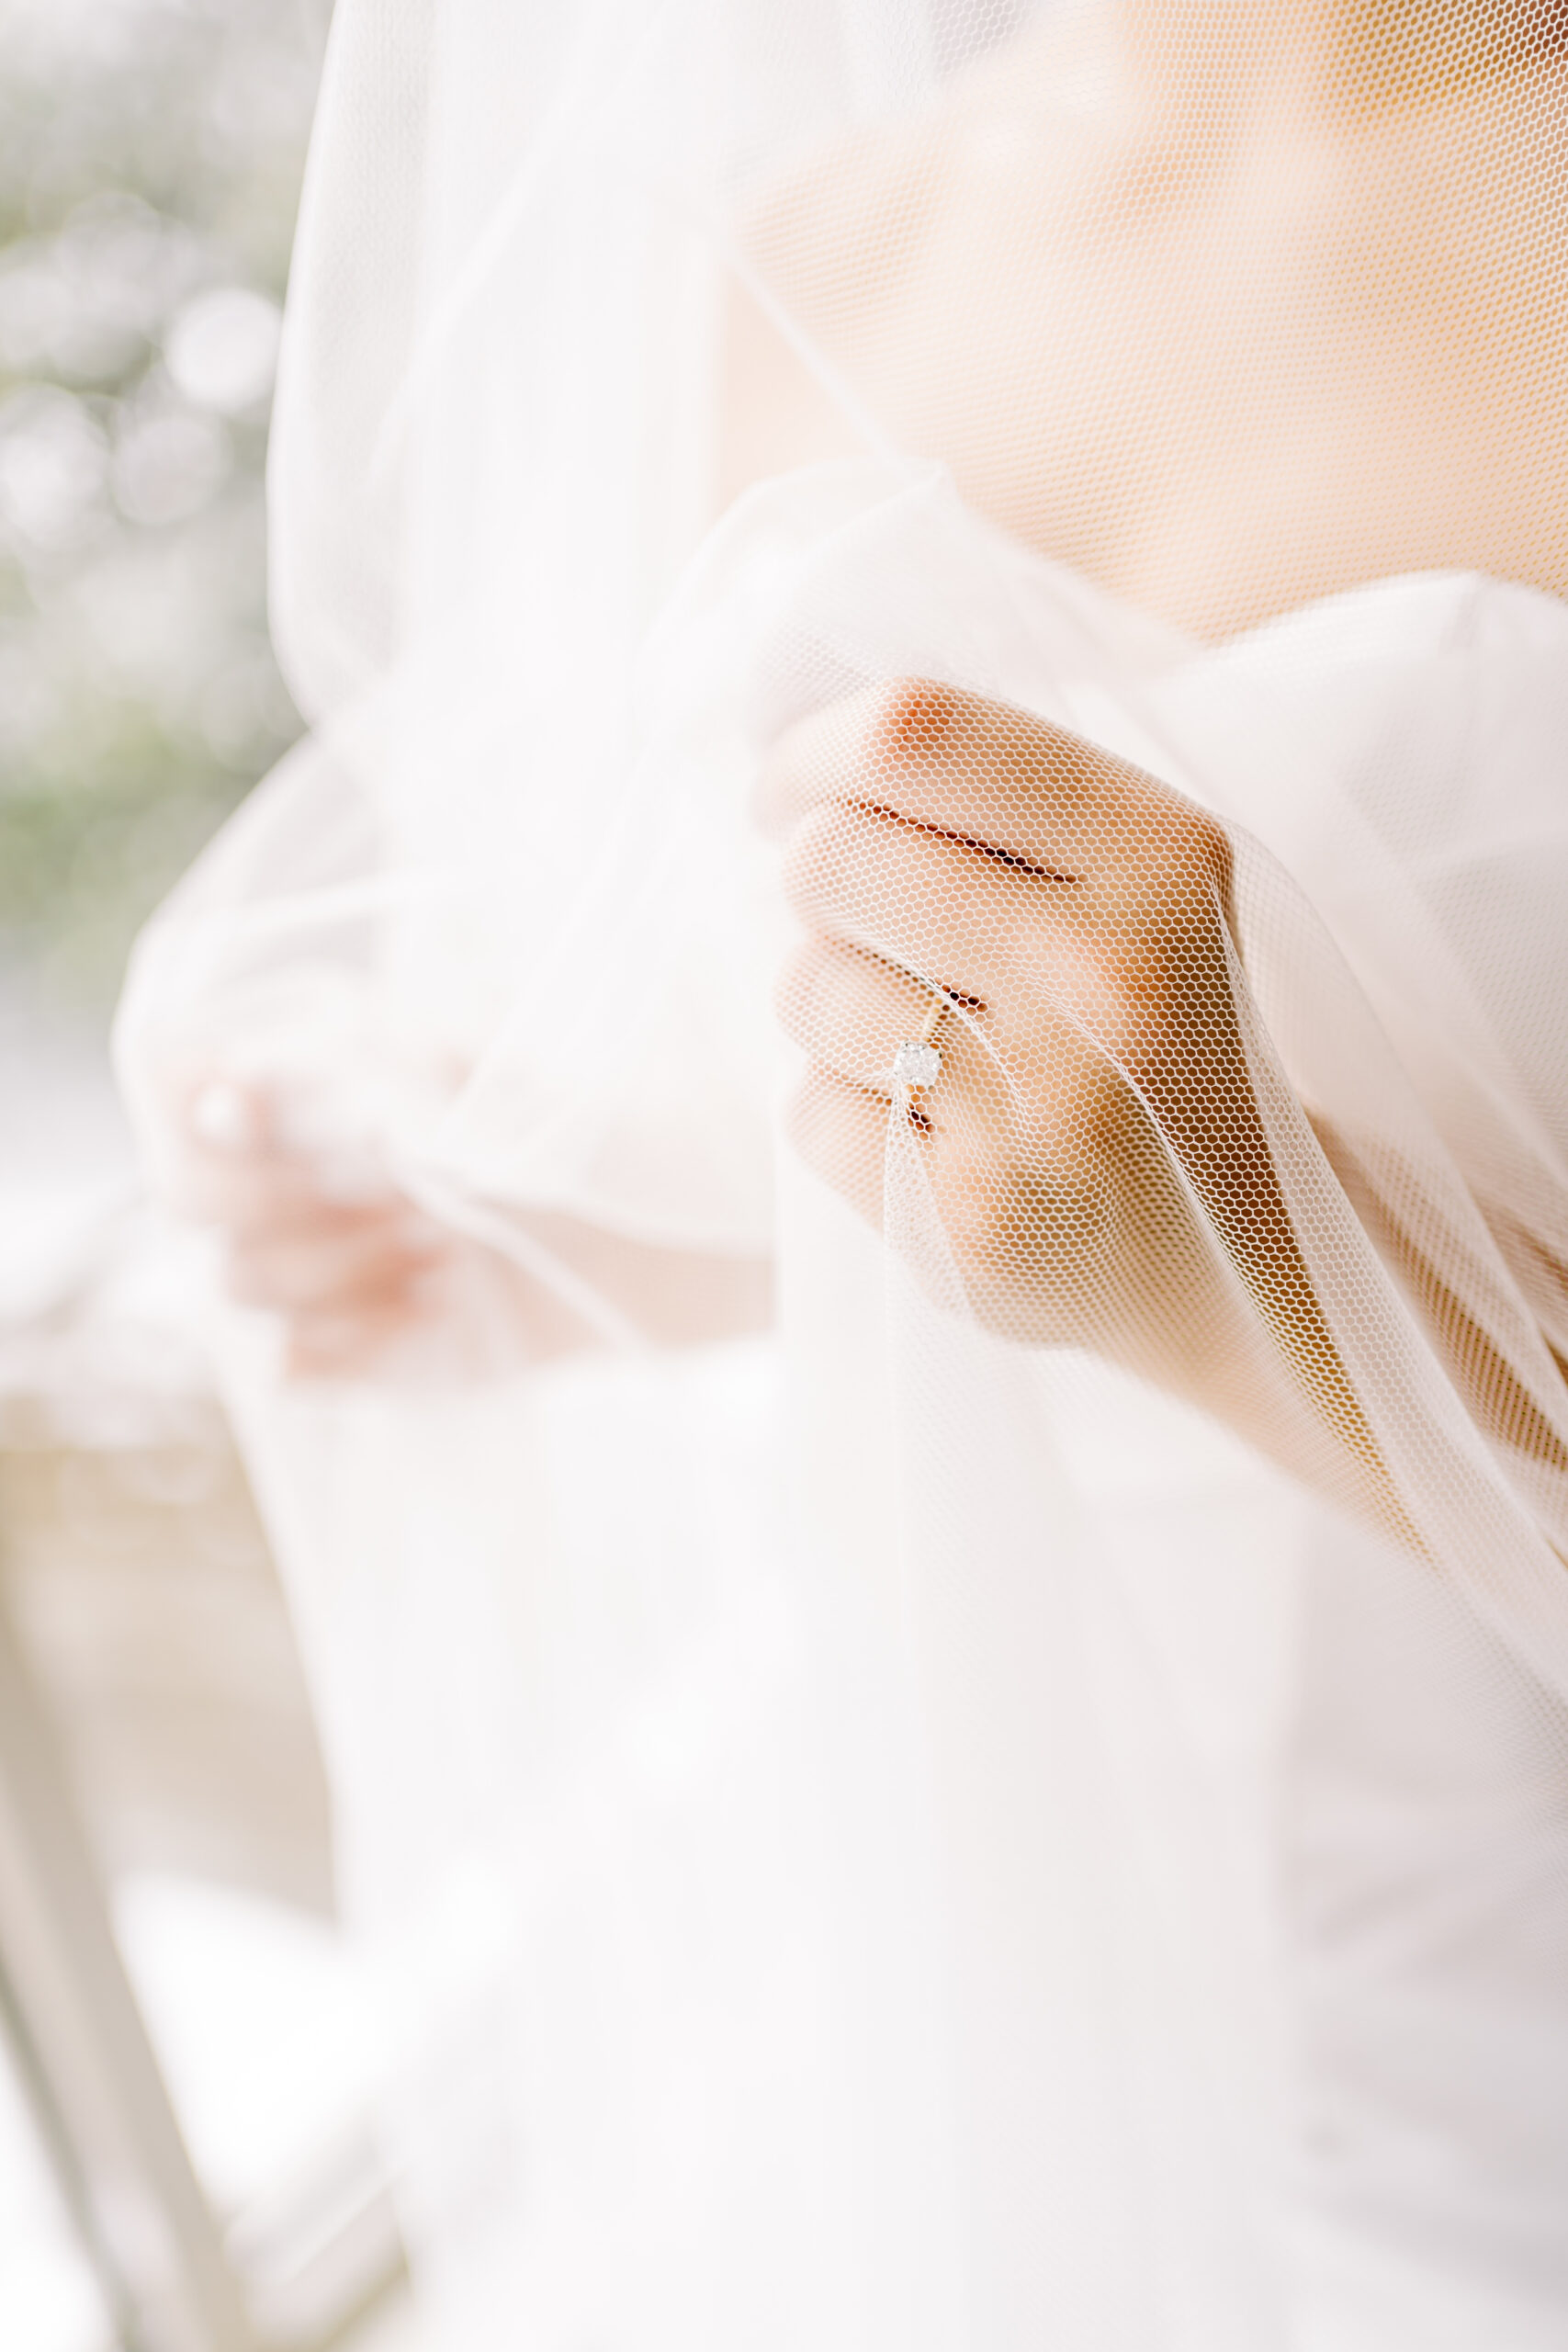 Bride solitaire wedding ring under veil